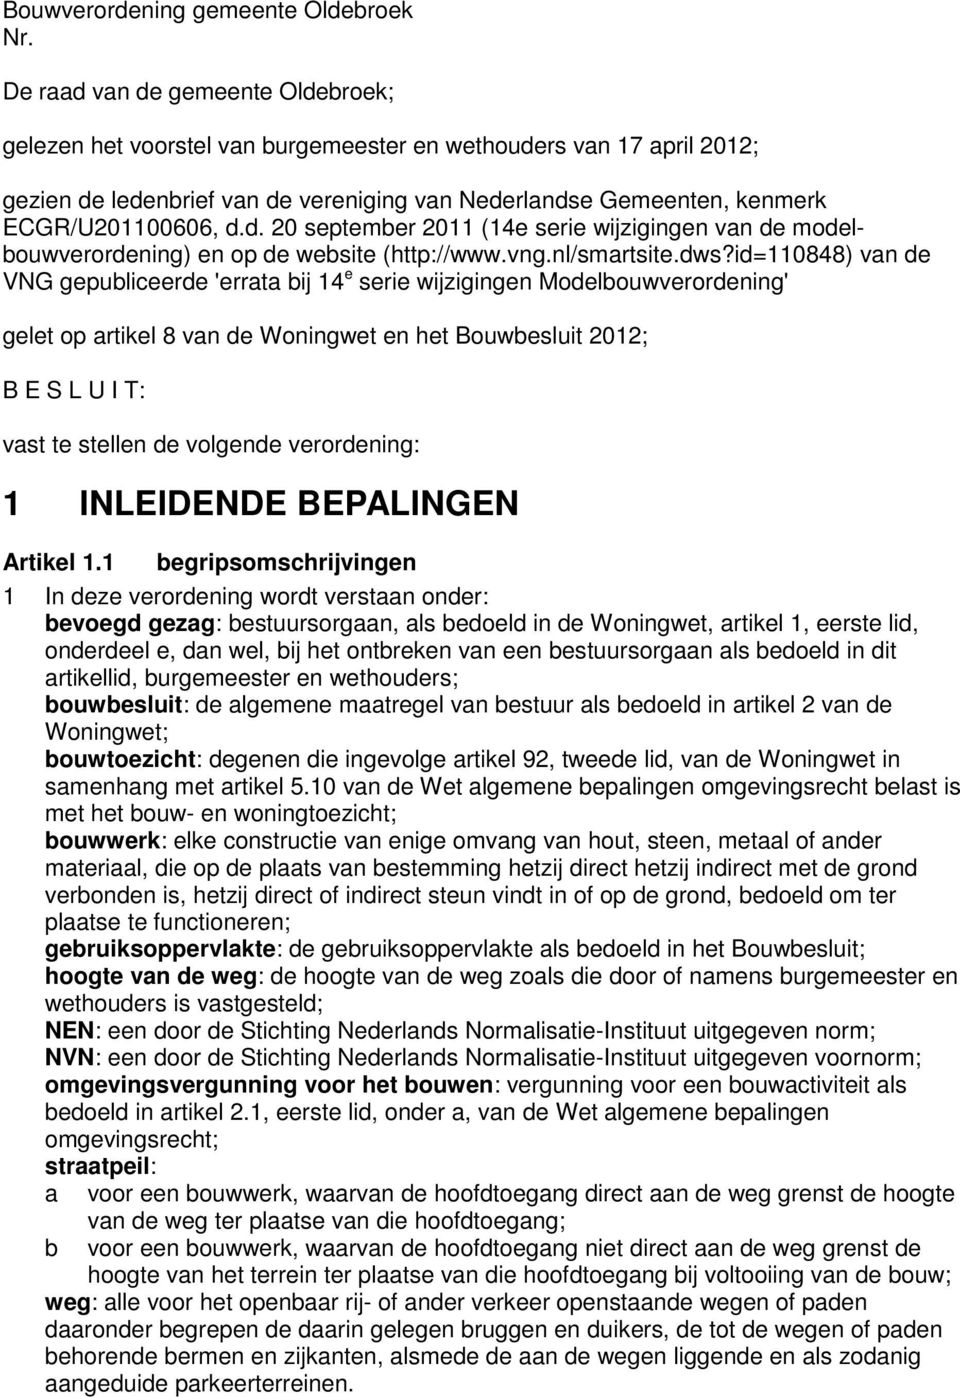 d. 20 september 2011 (14e serie wijzigingen van de modelbouwverordening) en op de website (http://www.vng.nl/smartsite.dws?